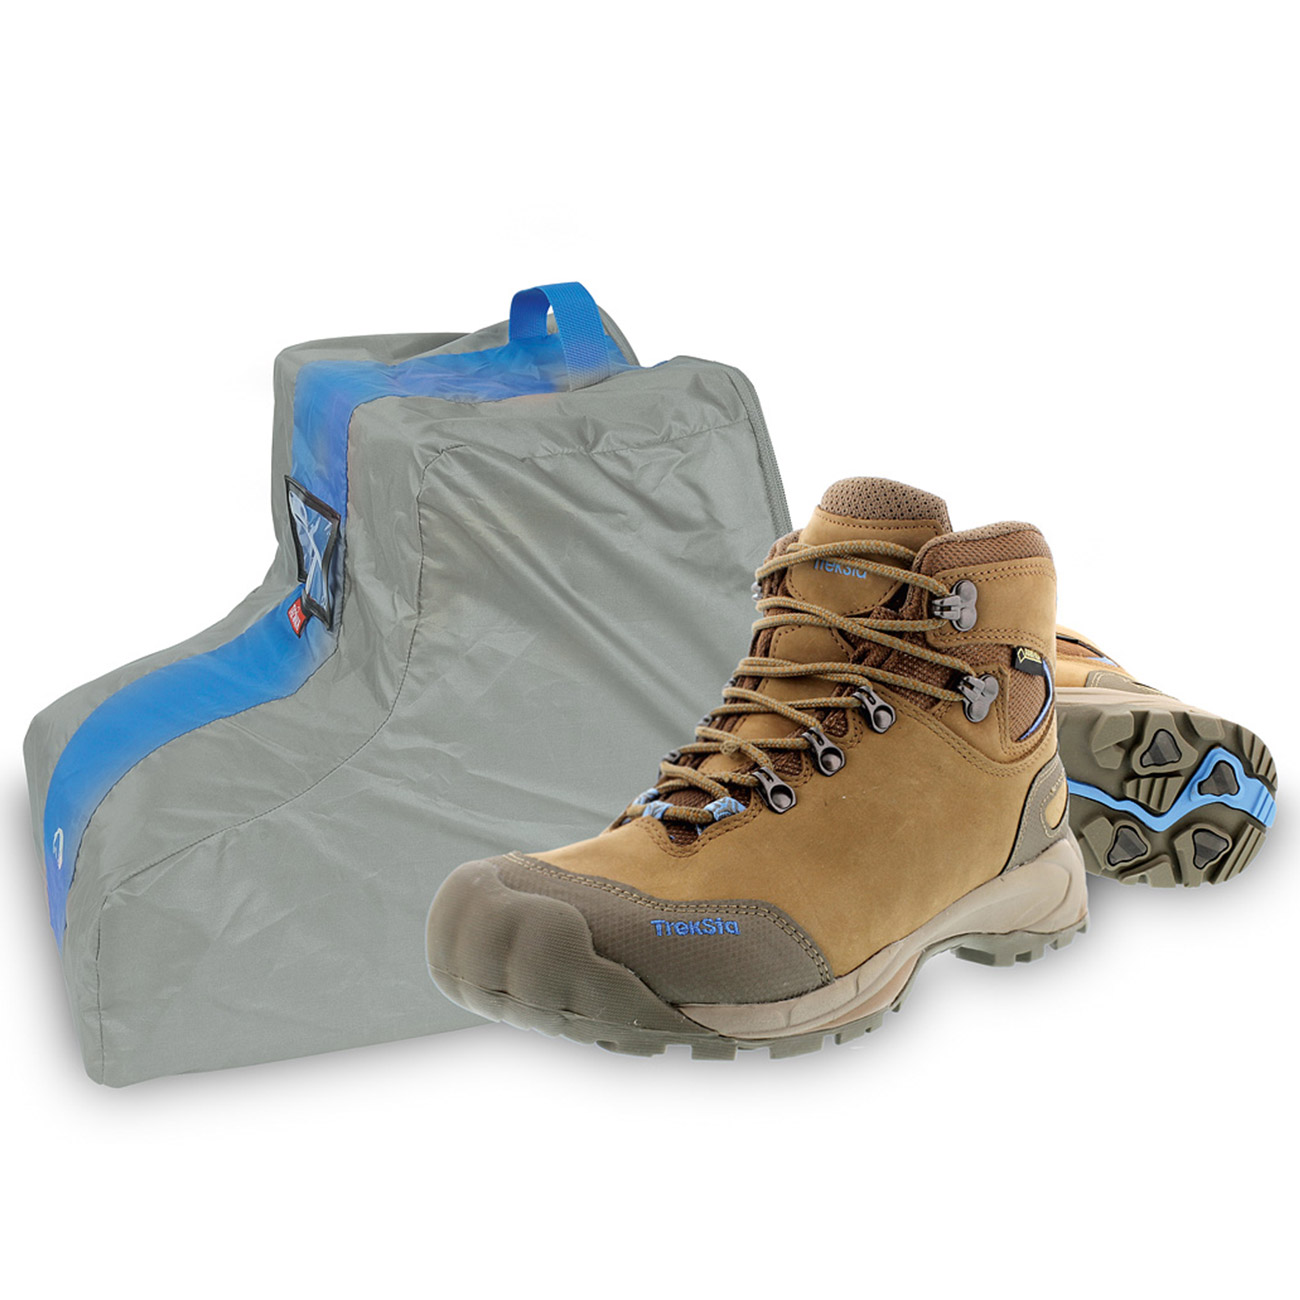 Tatonka Trekking Shoe Bag Aufbewahrungstasche für Berg- oder Skischuhe grau Bild 1